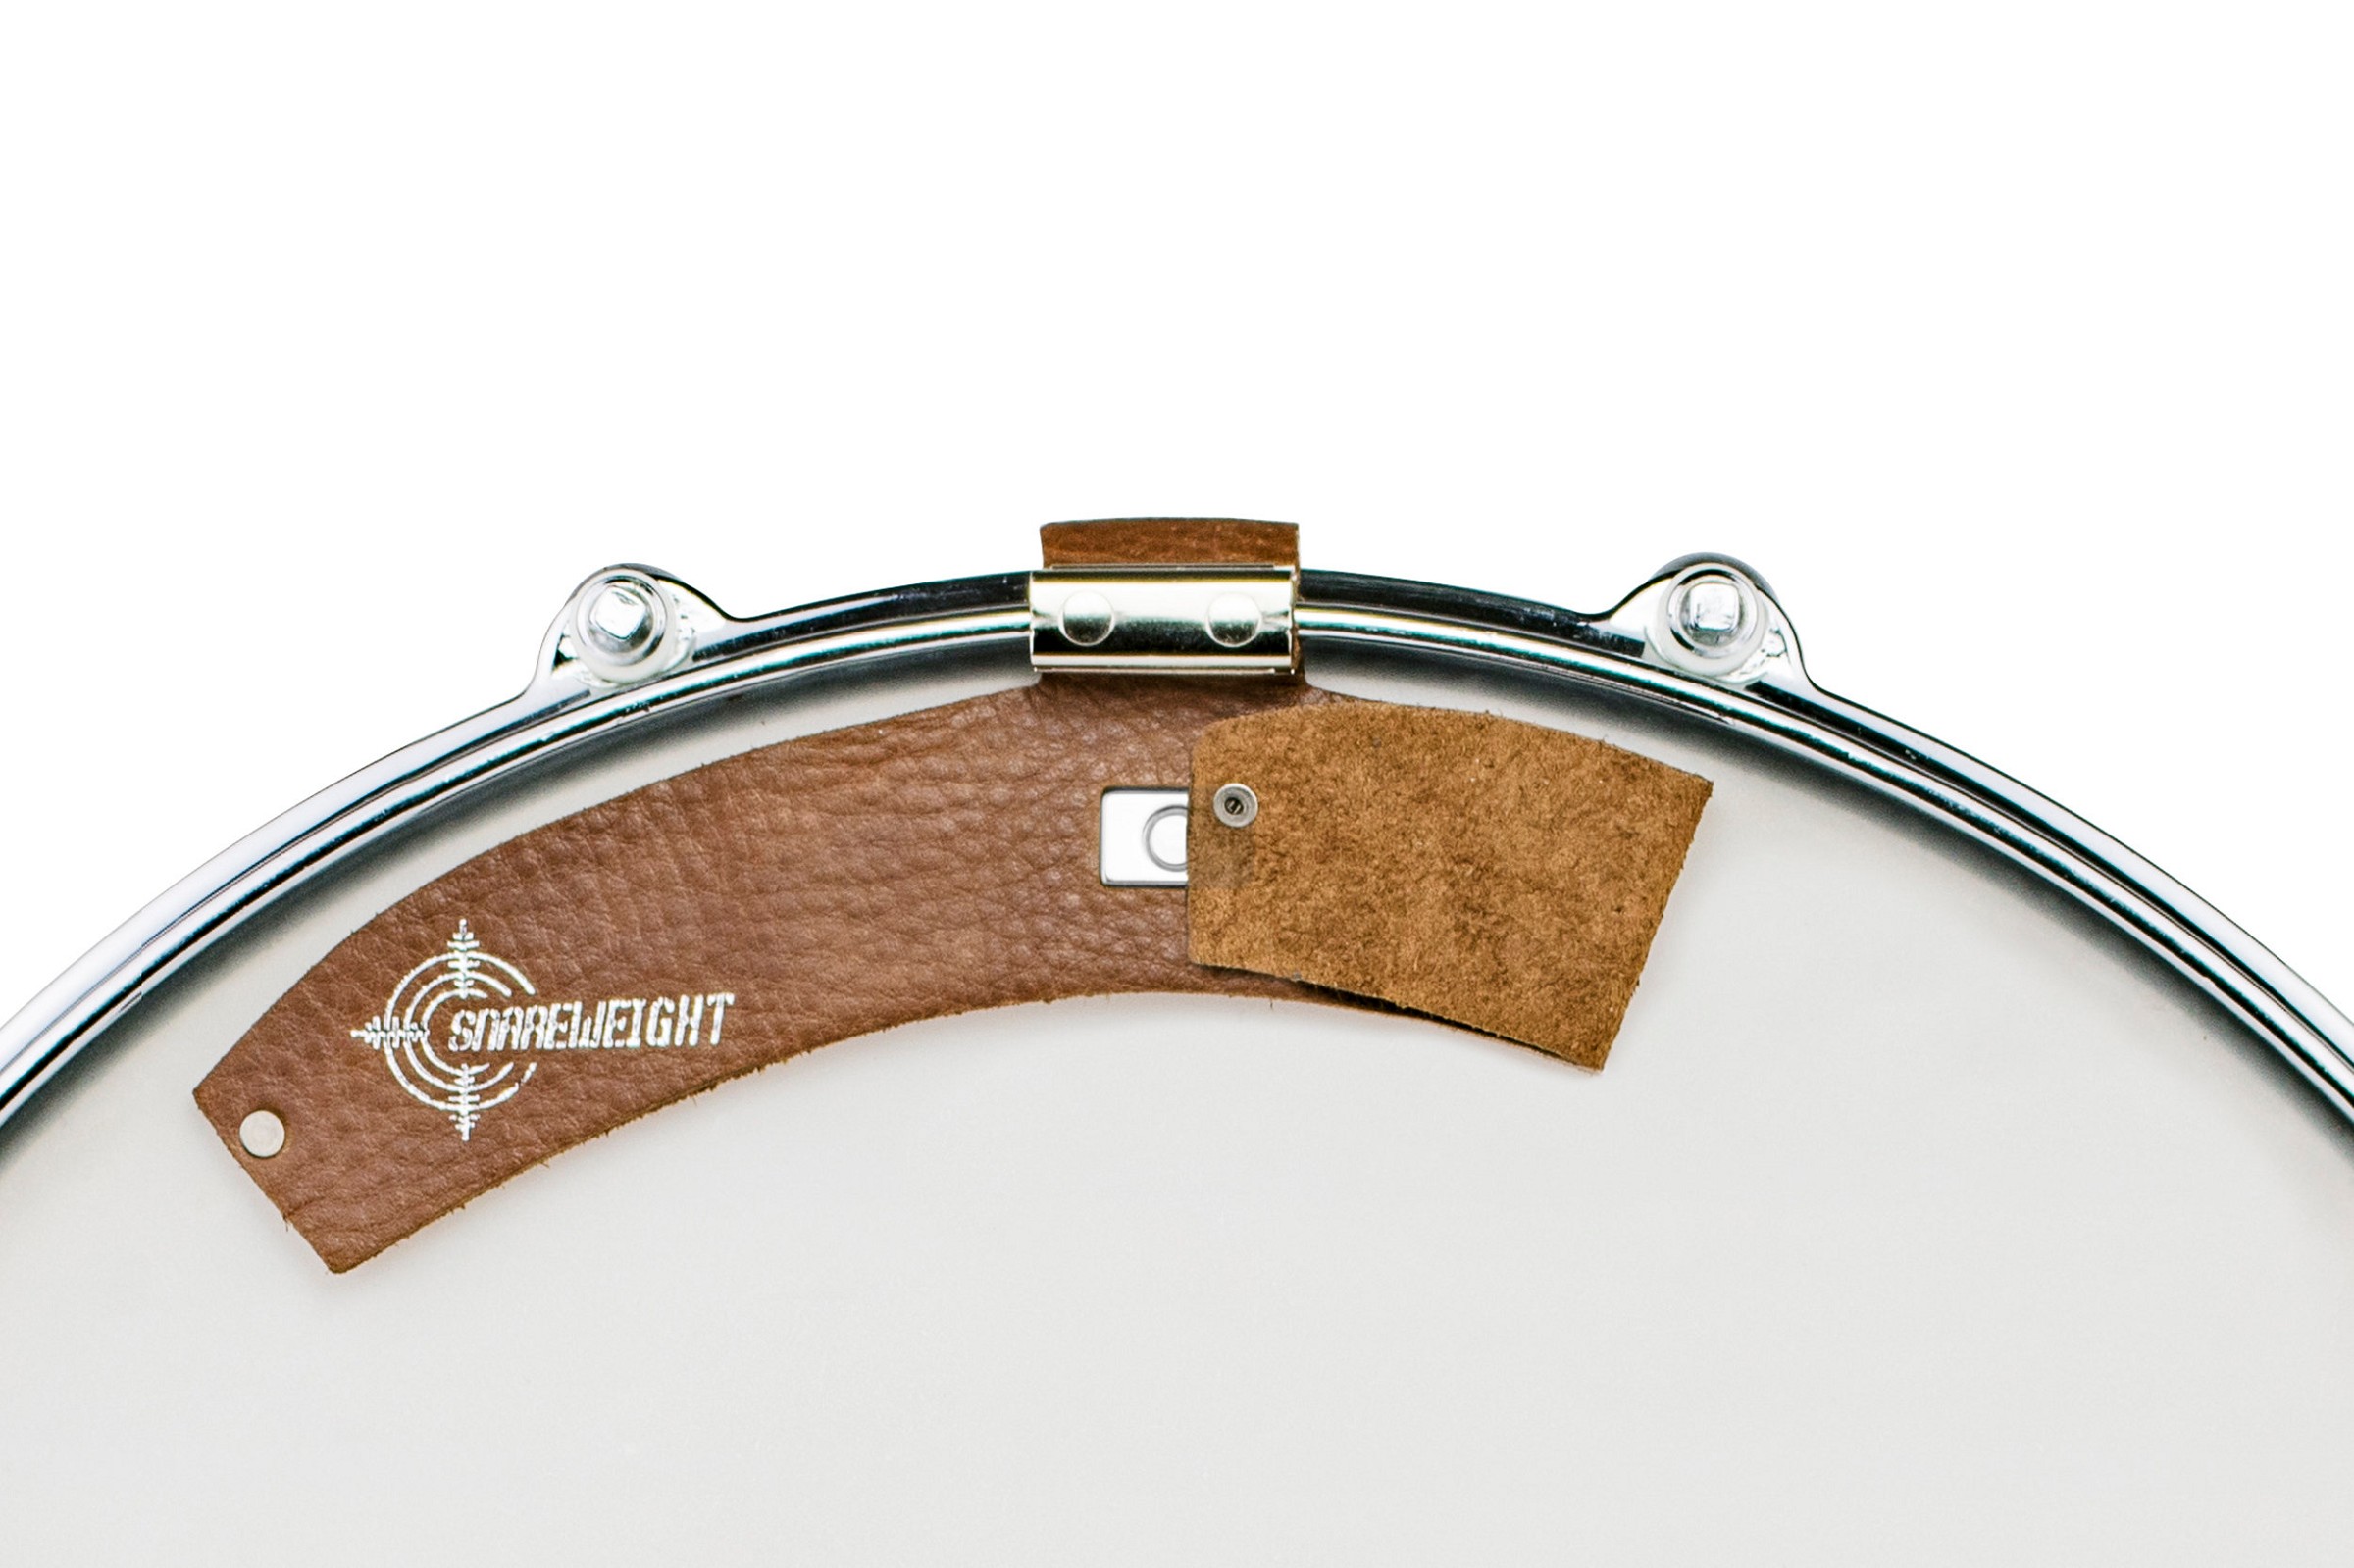 Snareweight M80 Magnetic Drumdämpfer brown Leder